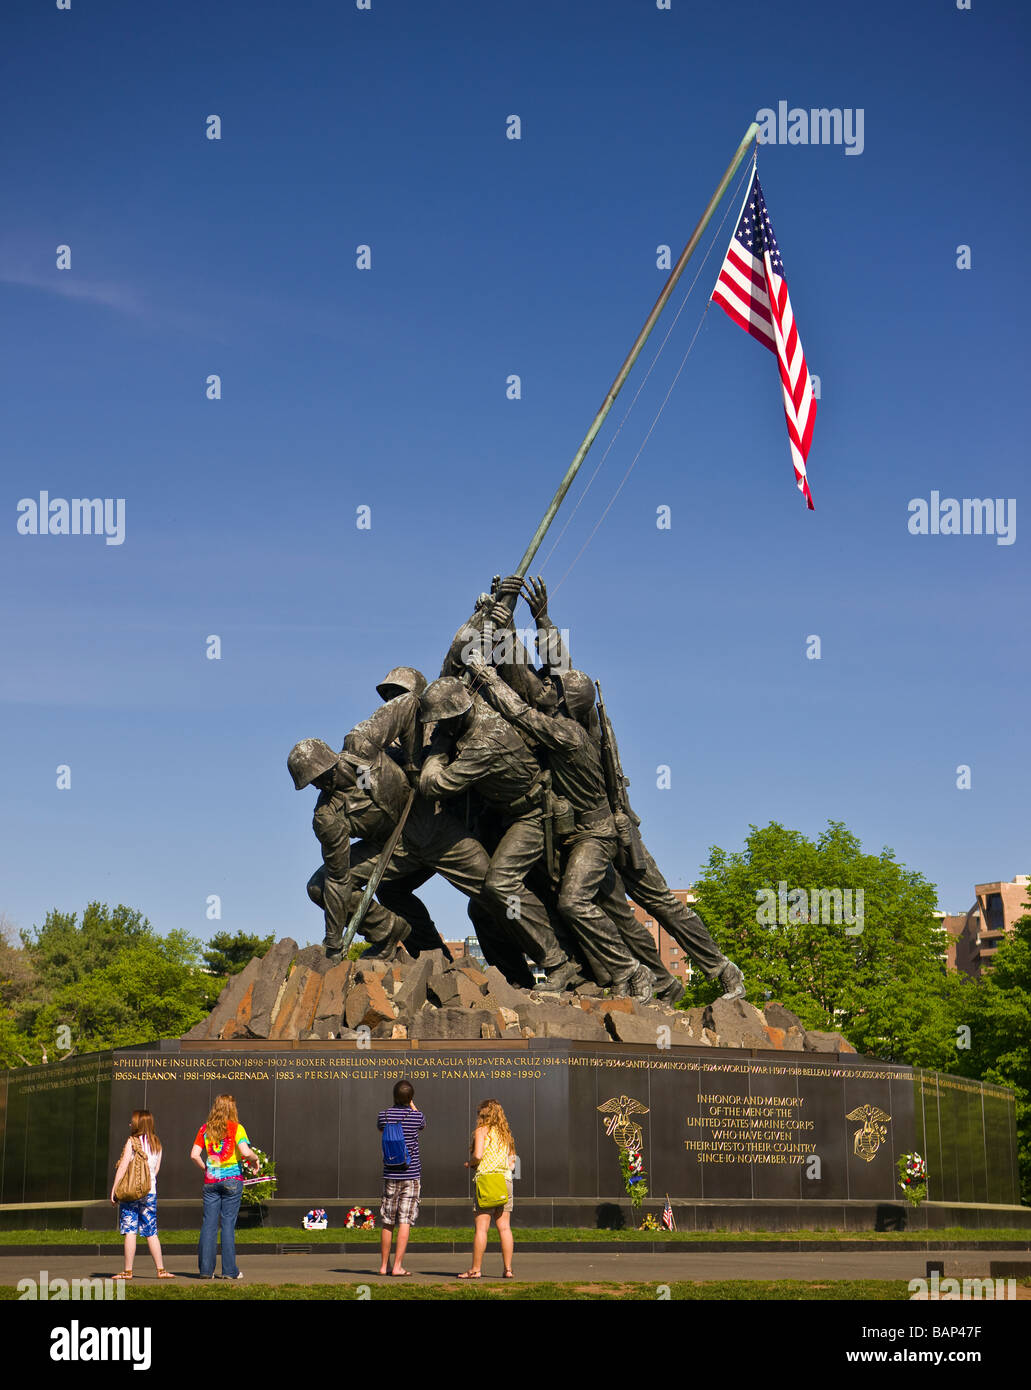 ARLINGTON VIRGINIA USA i turisti al Corpo della Marina degli Stati Uniti Memoriale di guerra Foto Stock